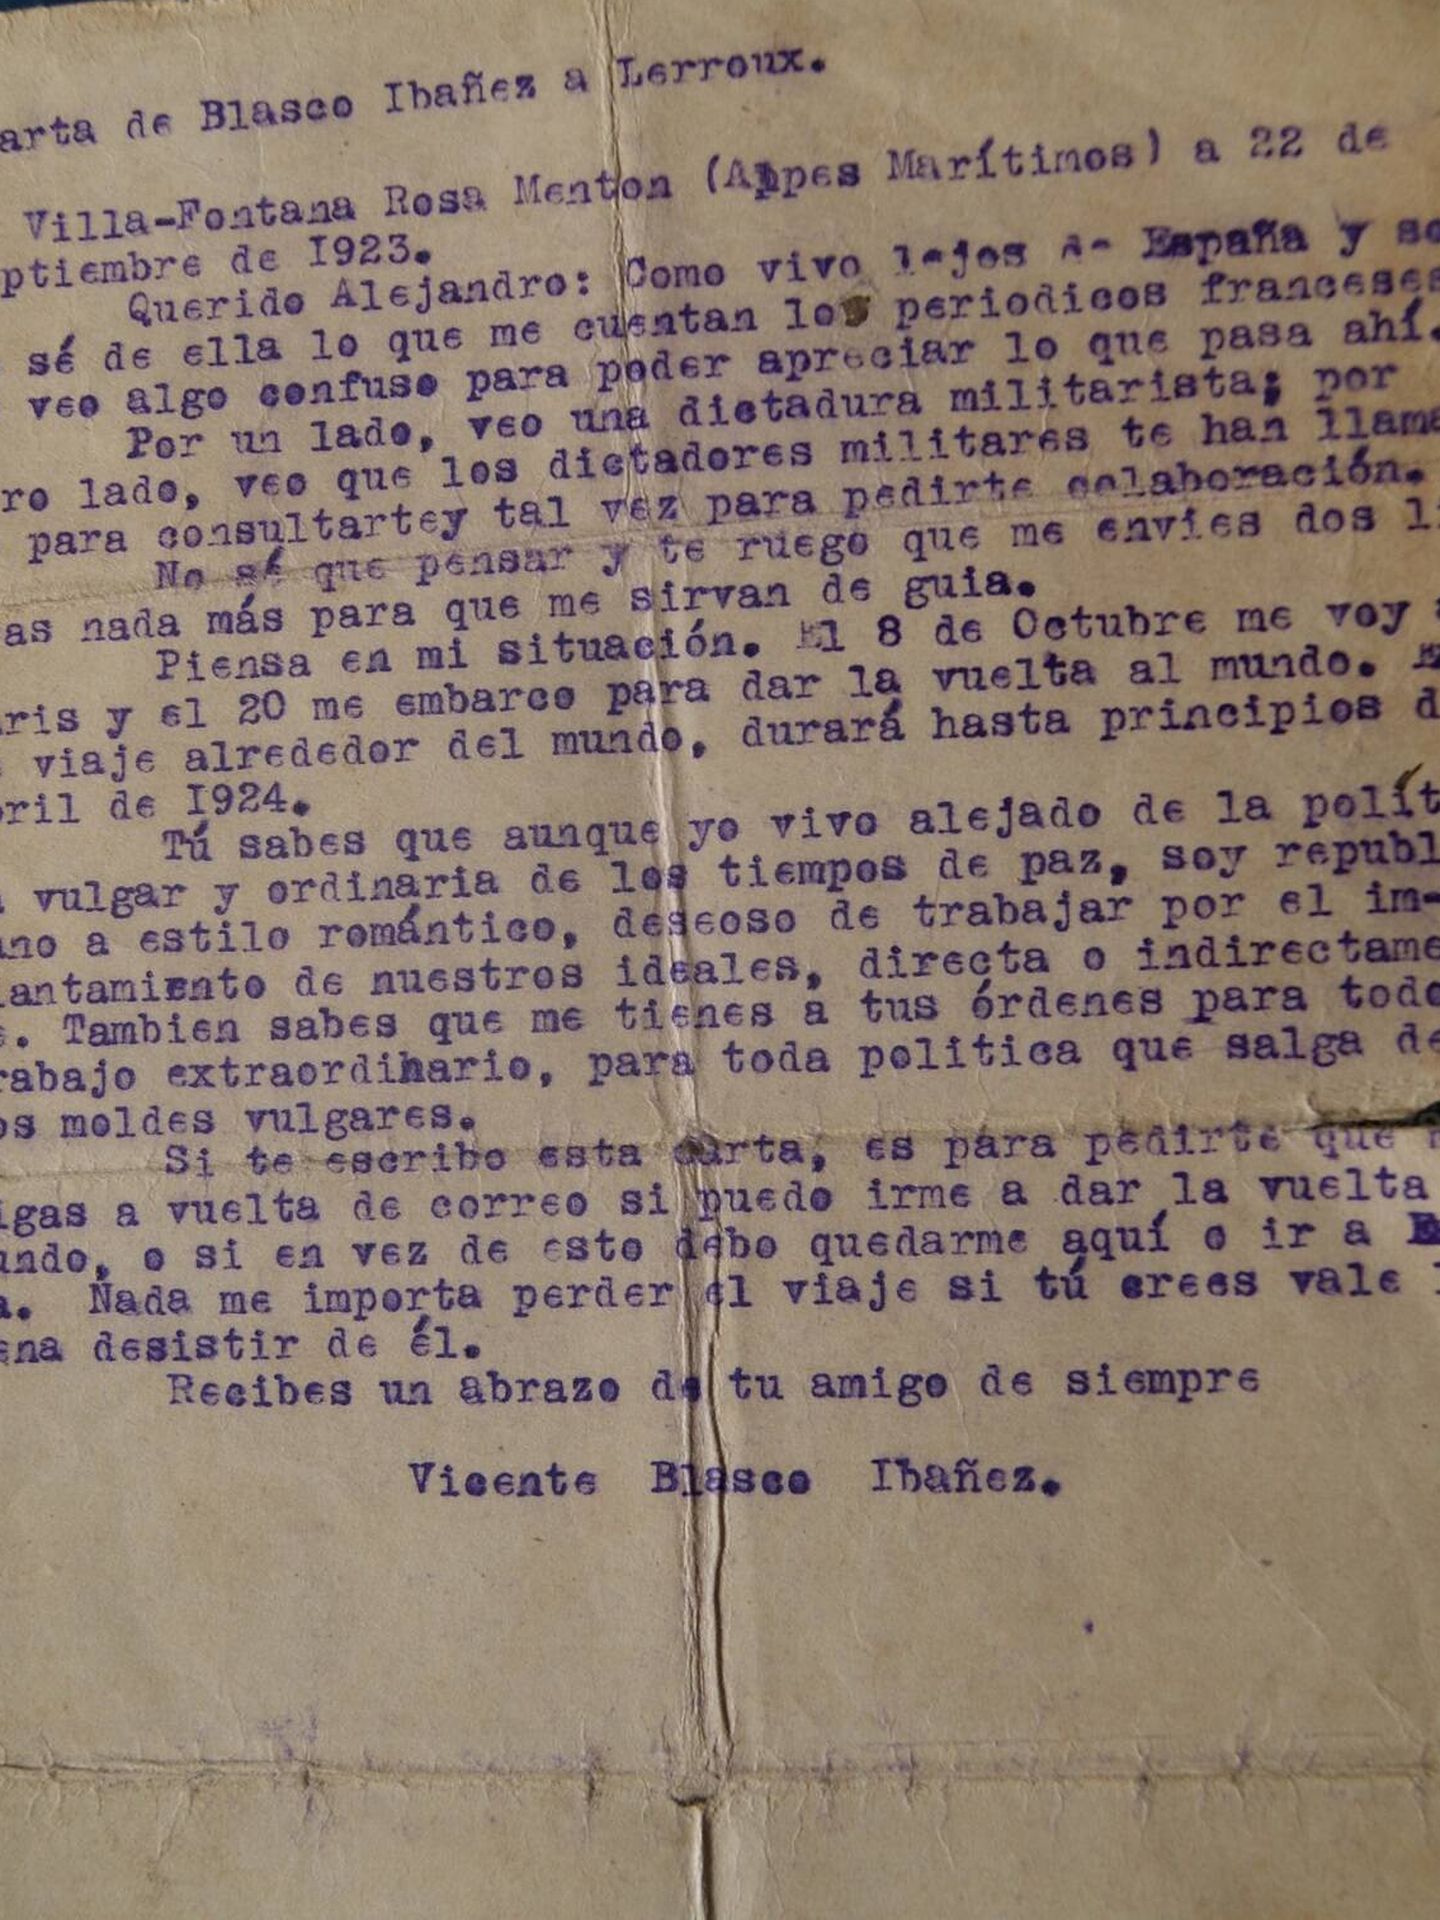 Carta de Blasco Ibáñez a Lerroux.